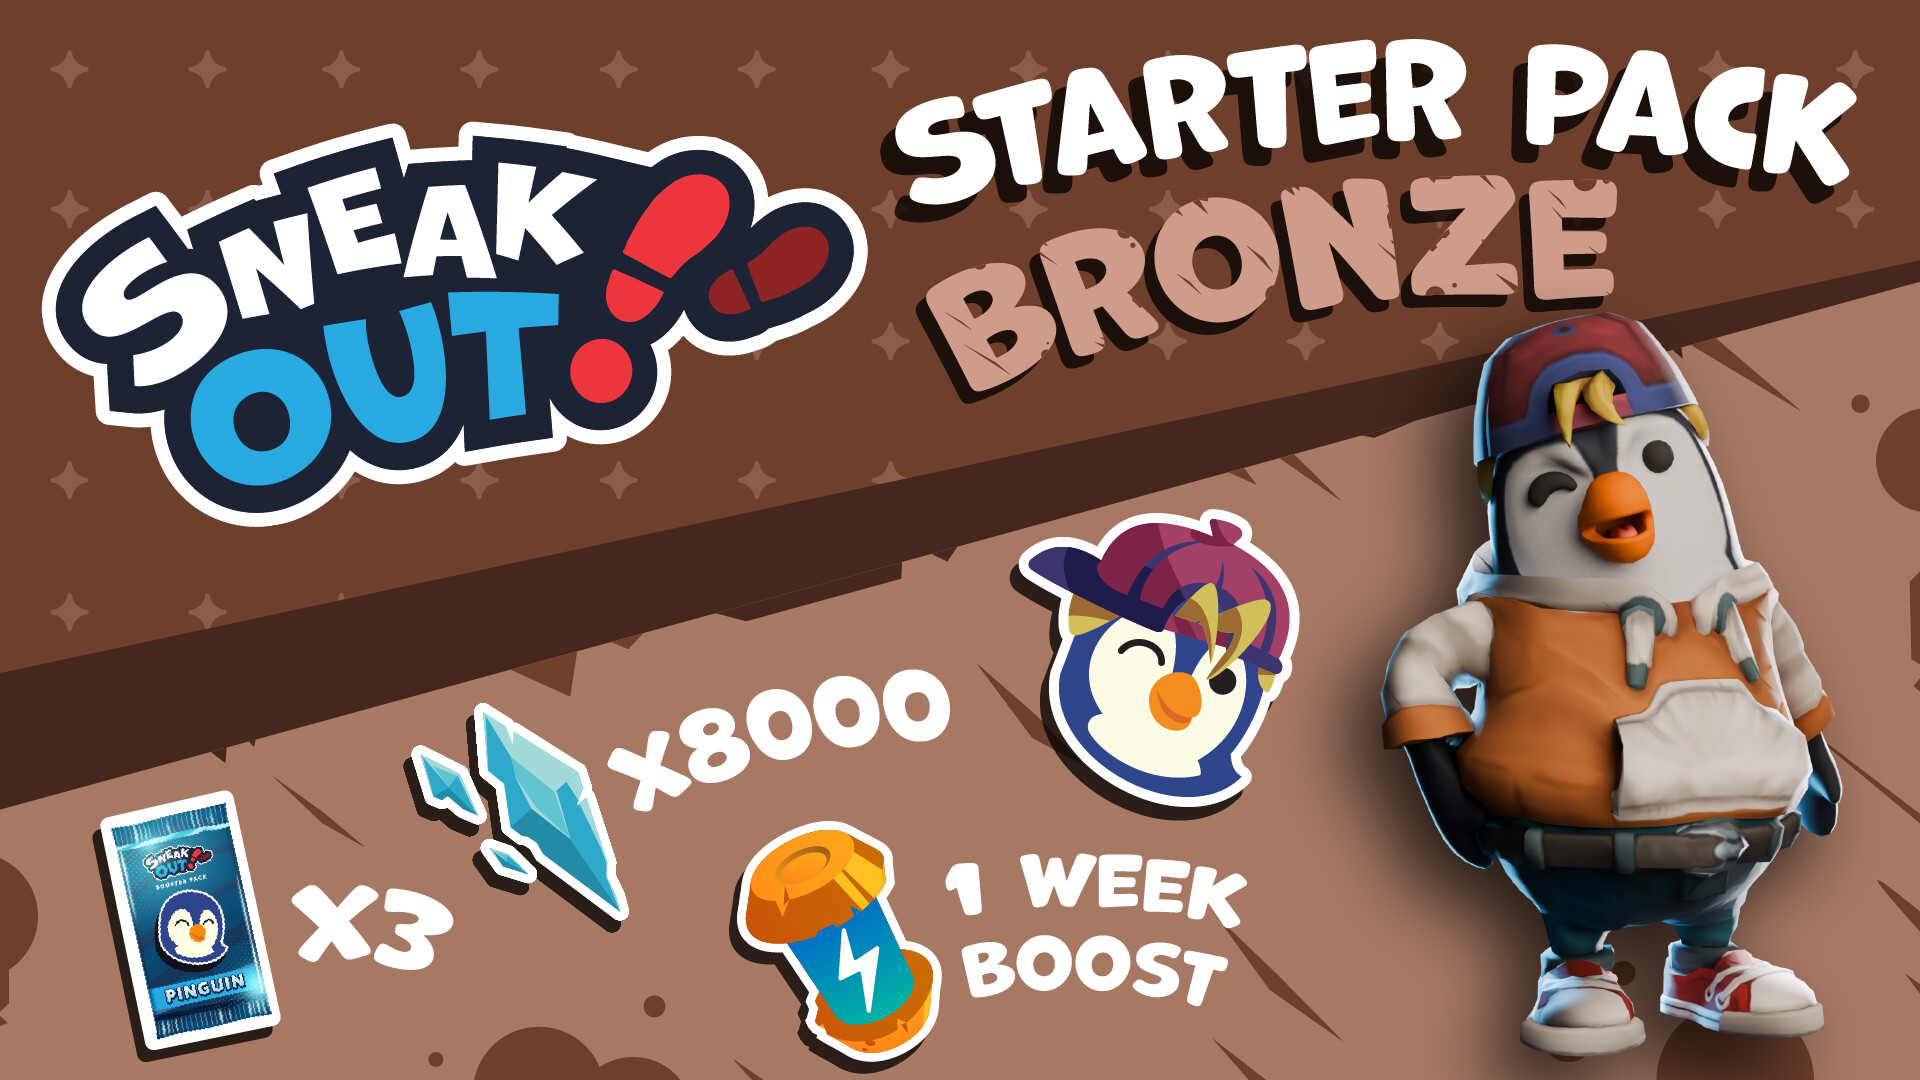 Sneak Out - Starter Pack Bronze Featured Screenshot #1